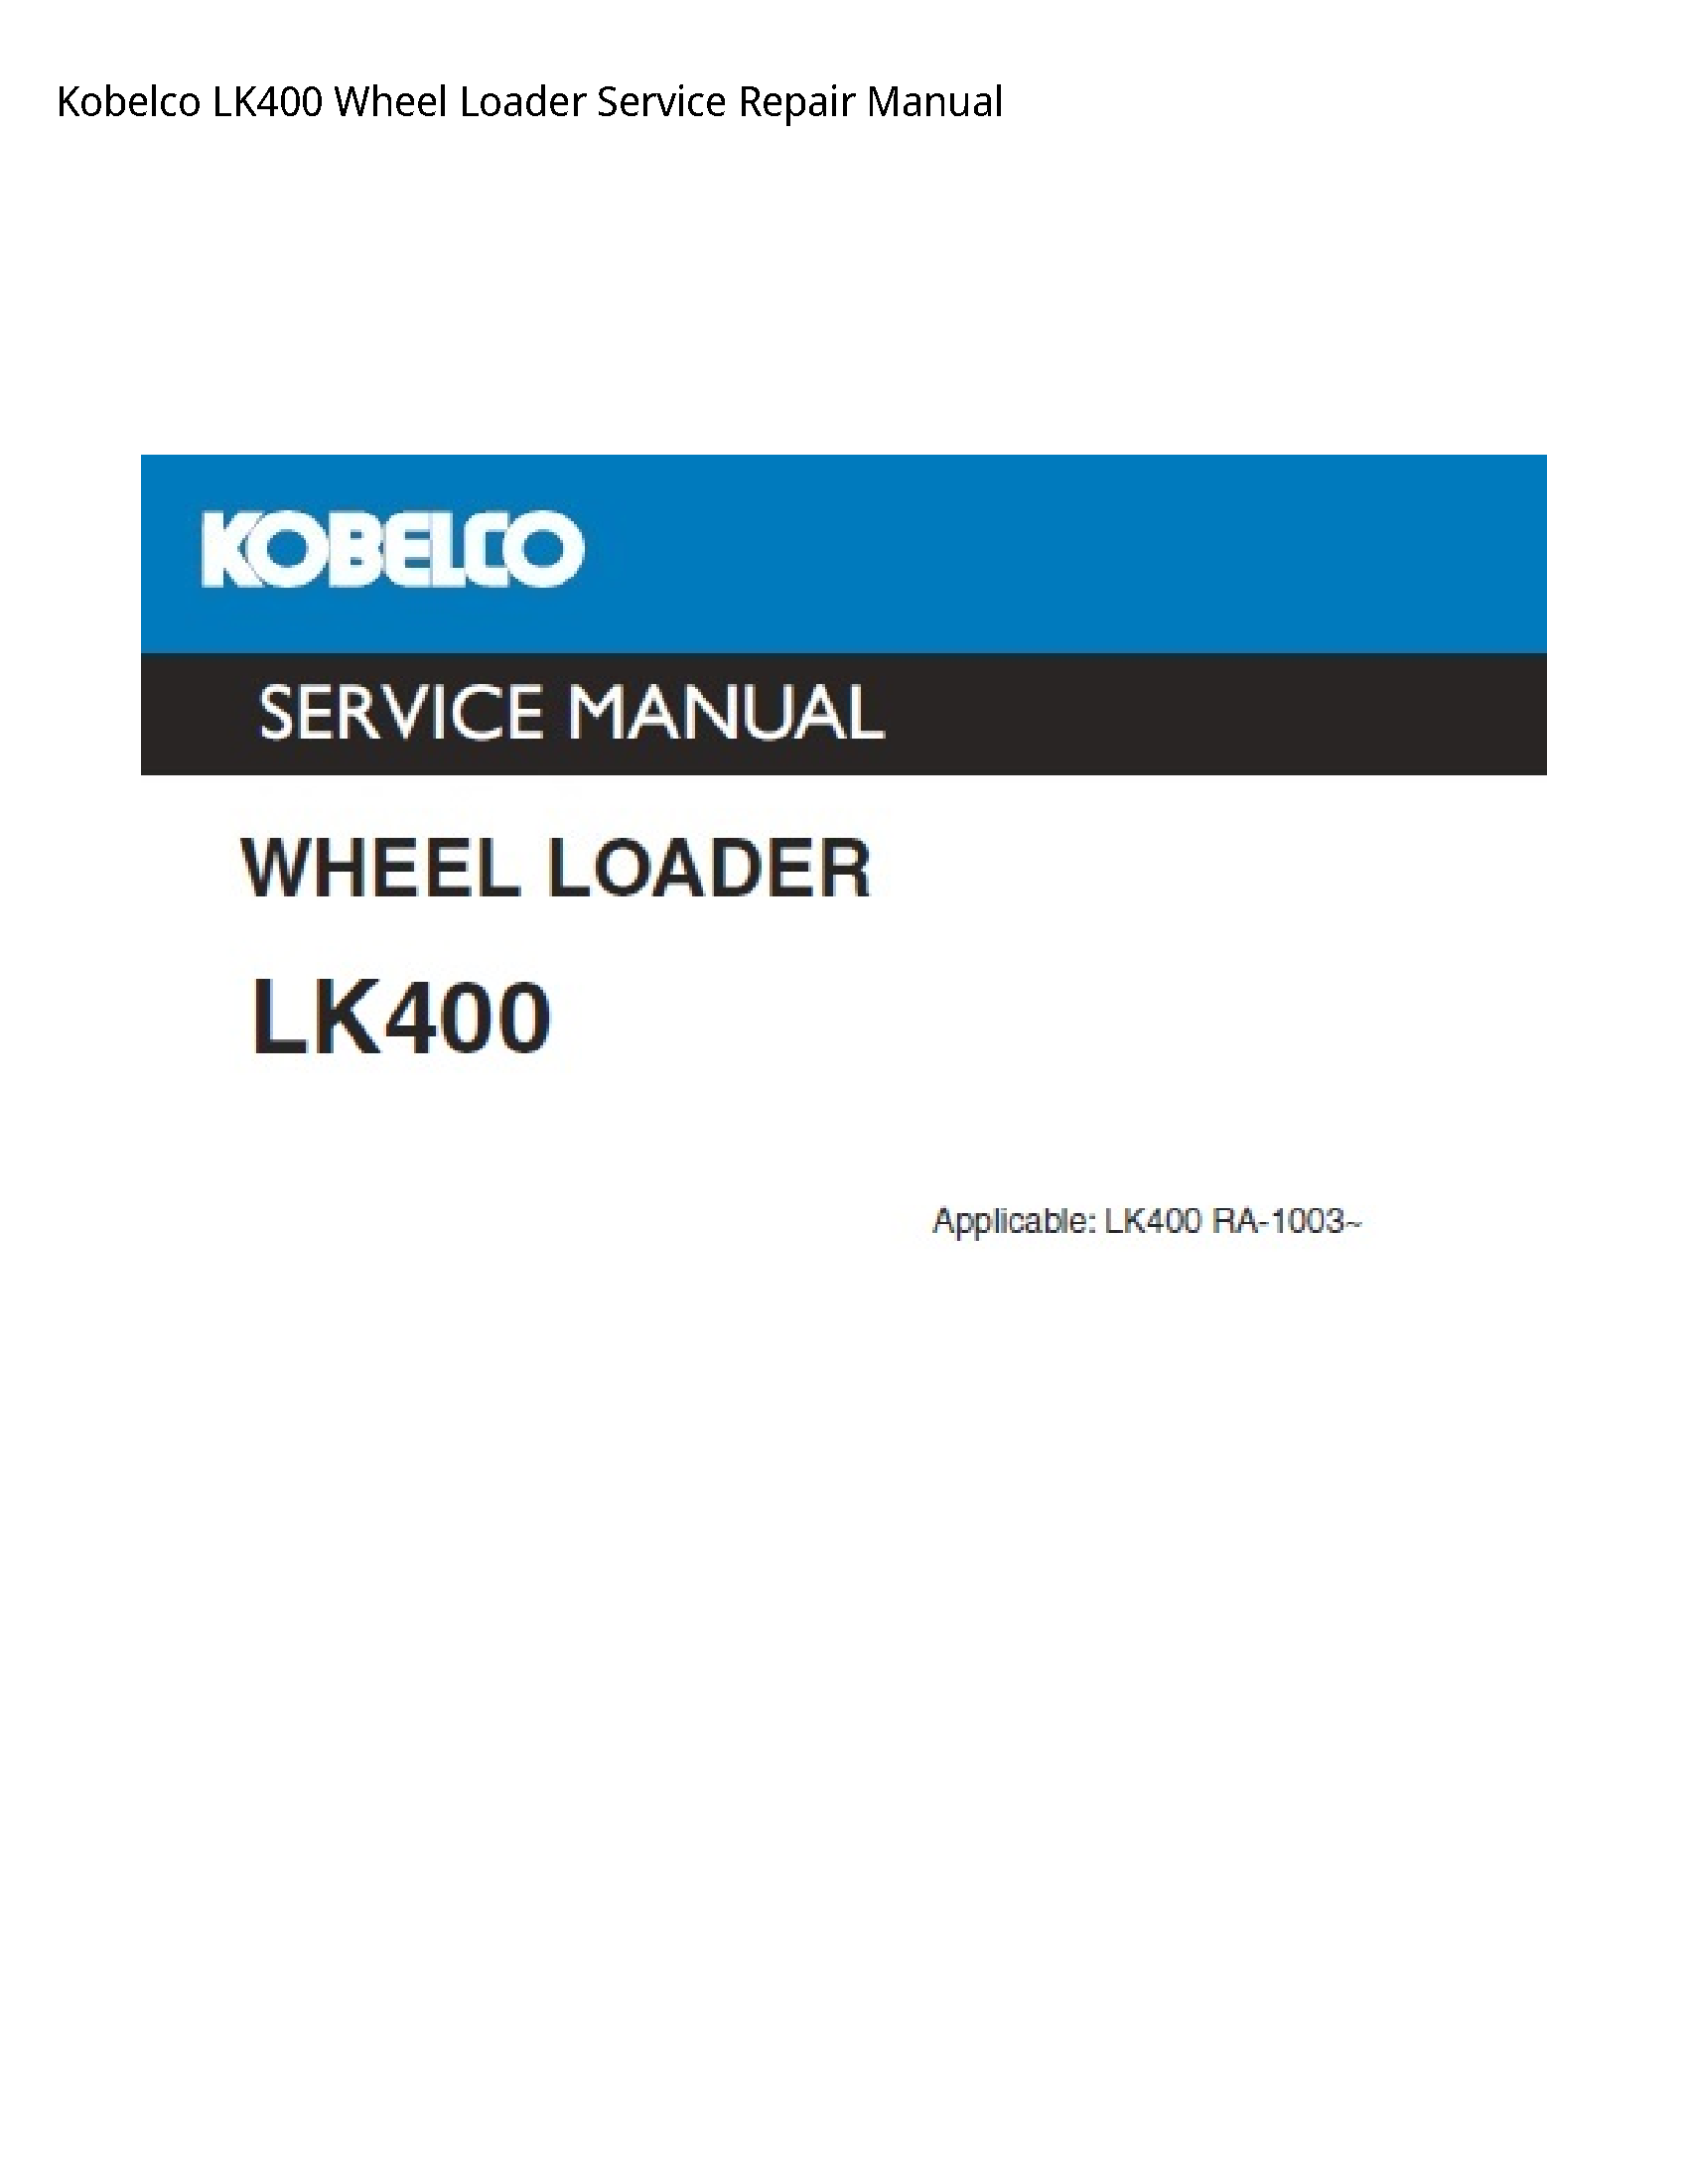 Kobelco LK400 Wheel Loader manual